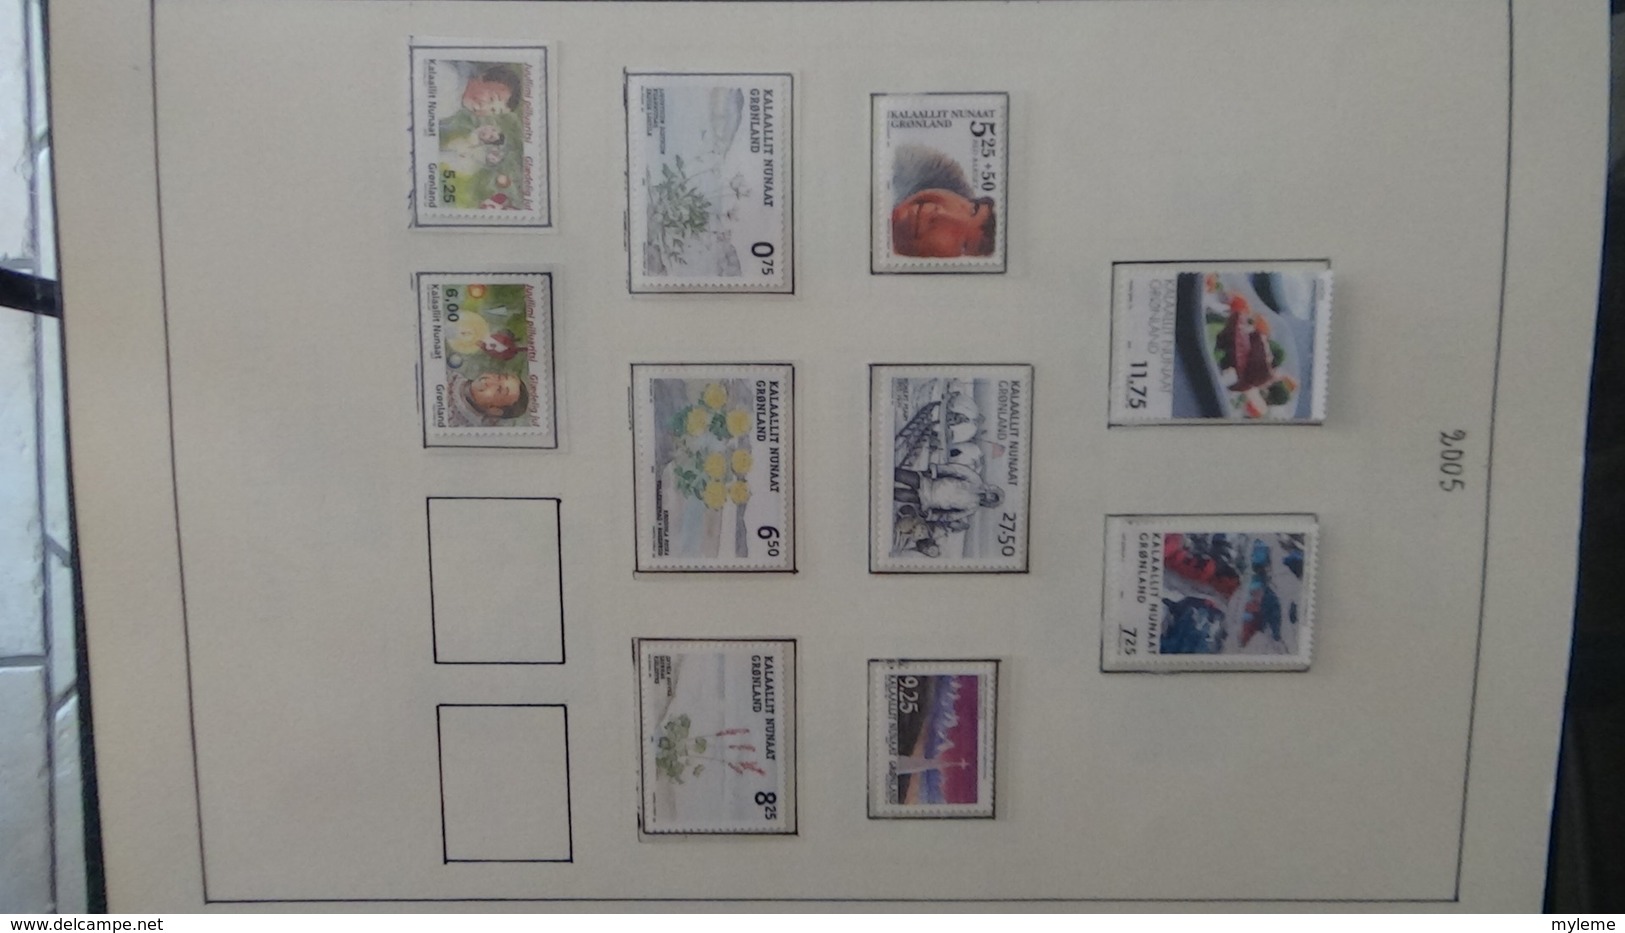 Collection de timbres et blocs ** du Groendland. PORT OFFERT DES 50 EUROS D'ACHATS. Voir commentaires